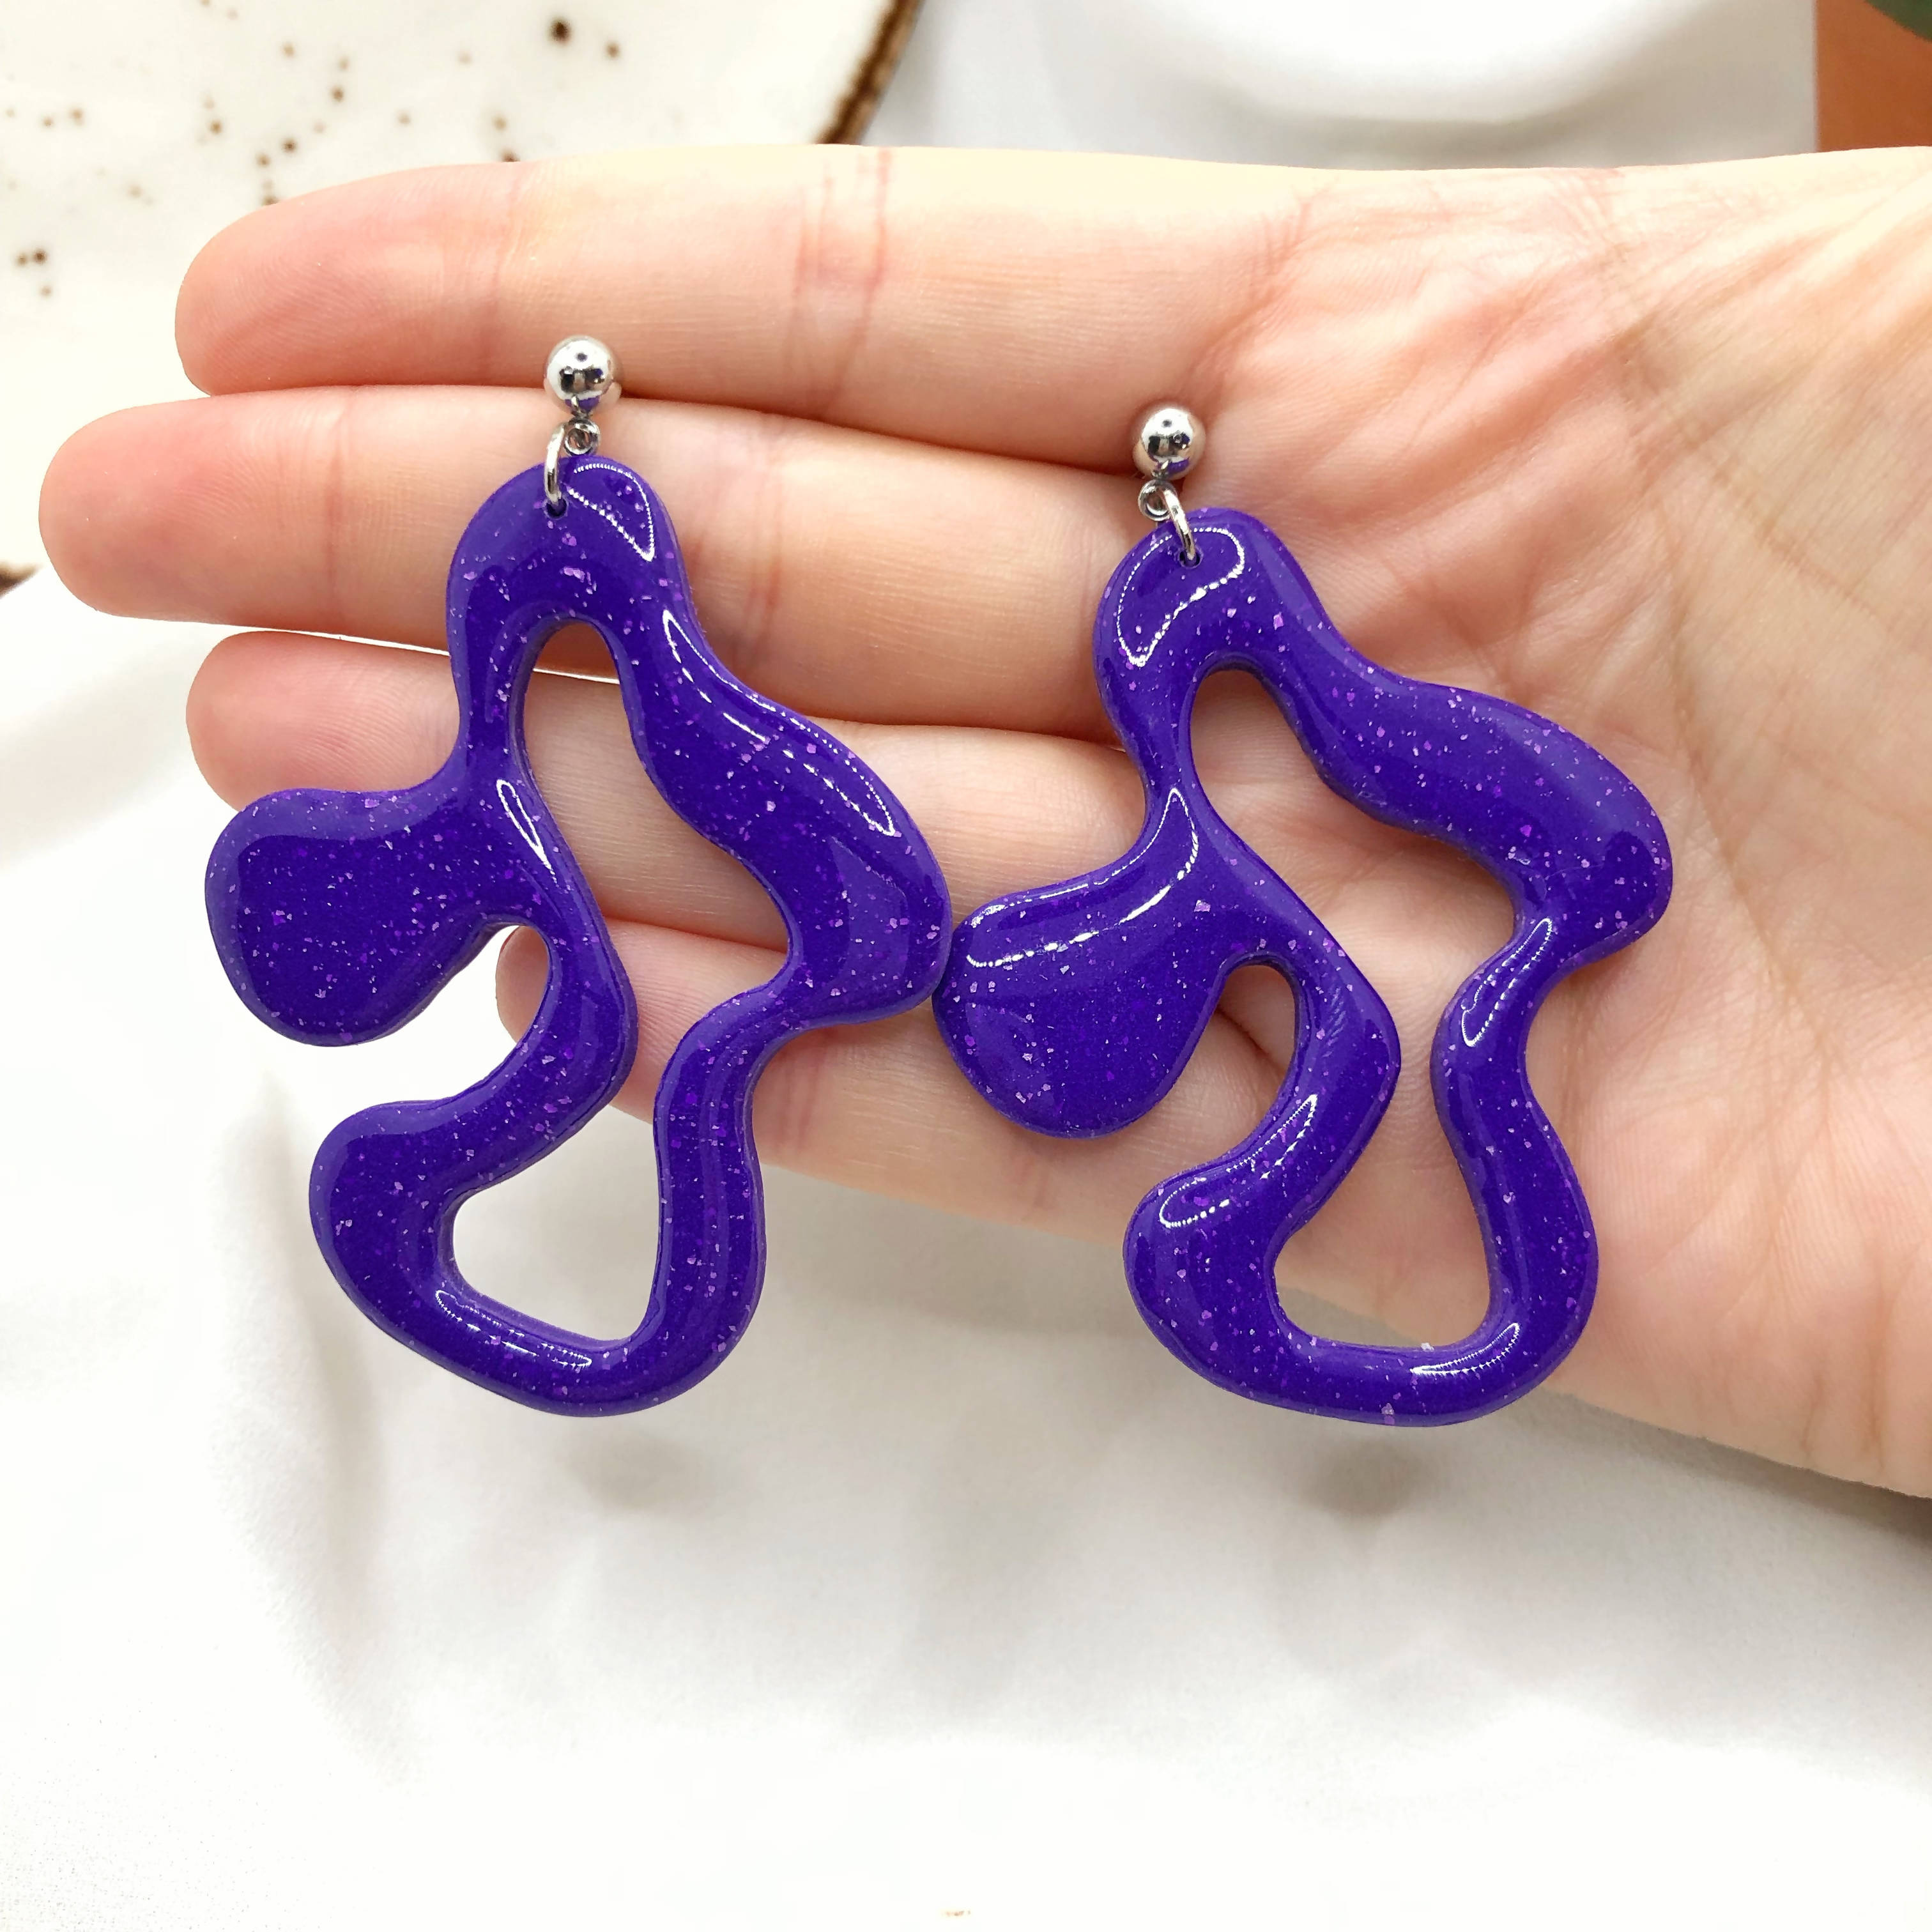 Bright Purple Earrings, Hand Crafted Free Form Earrings , Nickel Free Ear Back Earrings - Wear Sierra